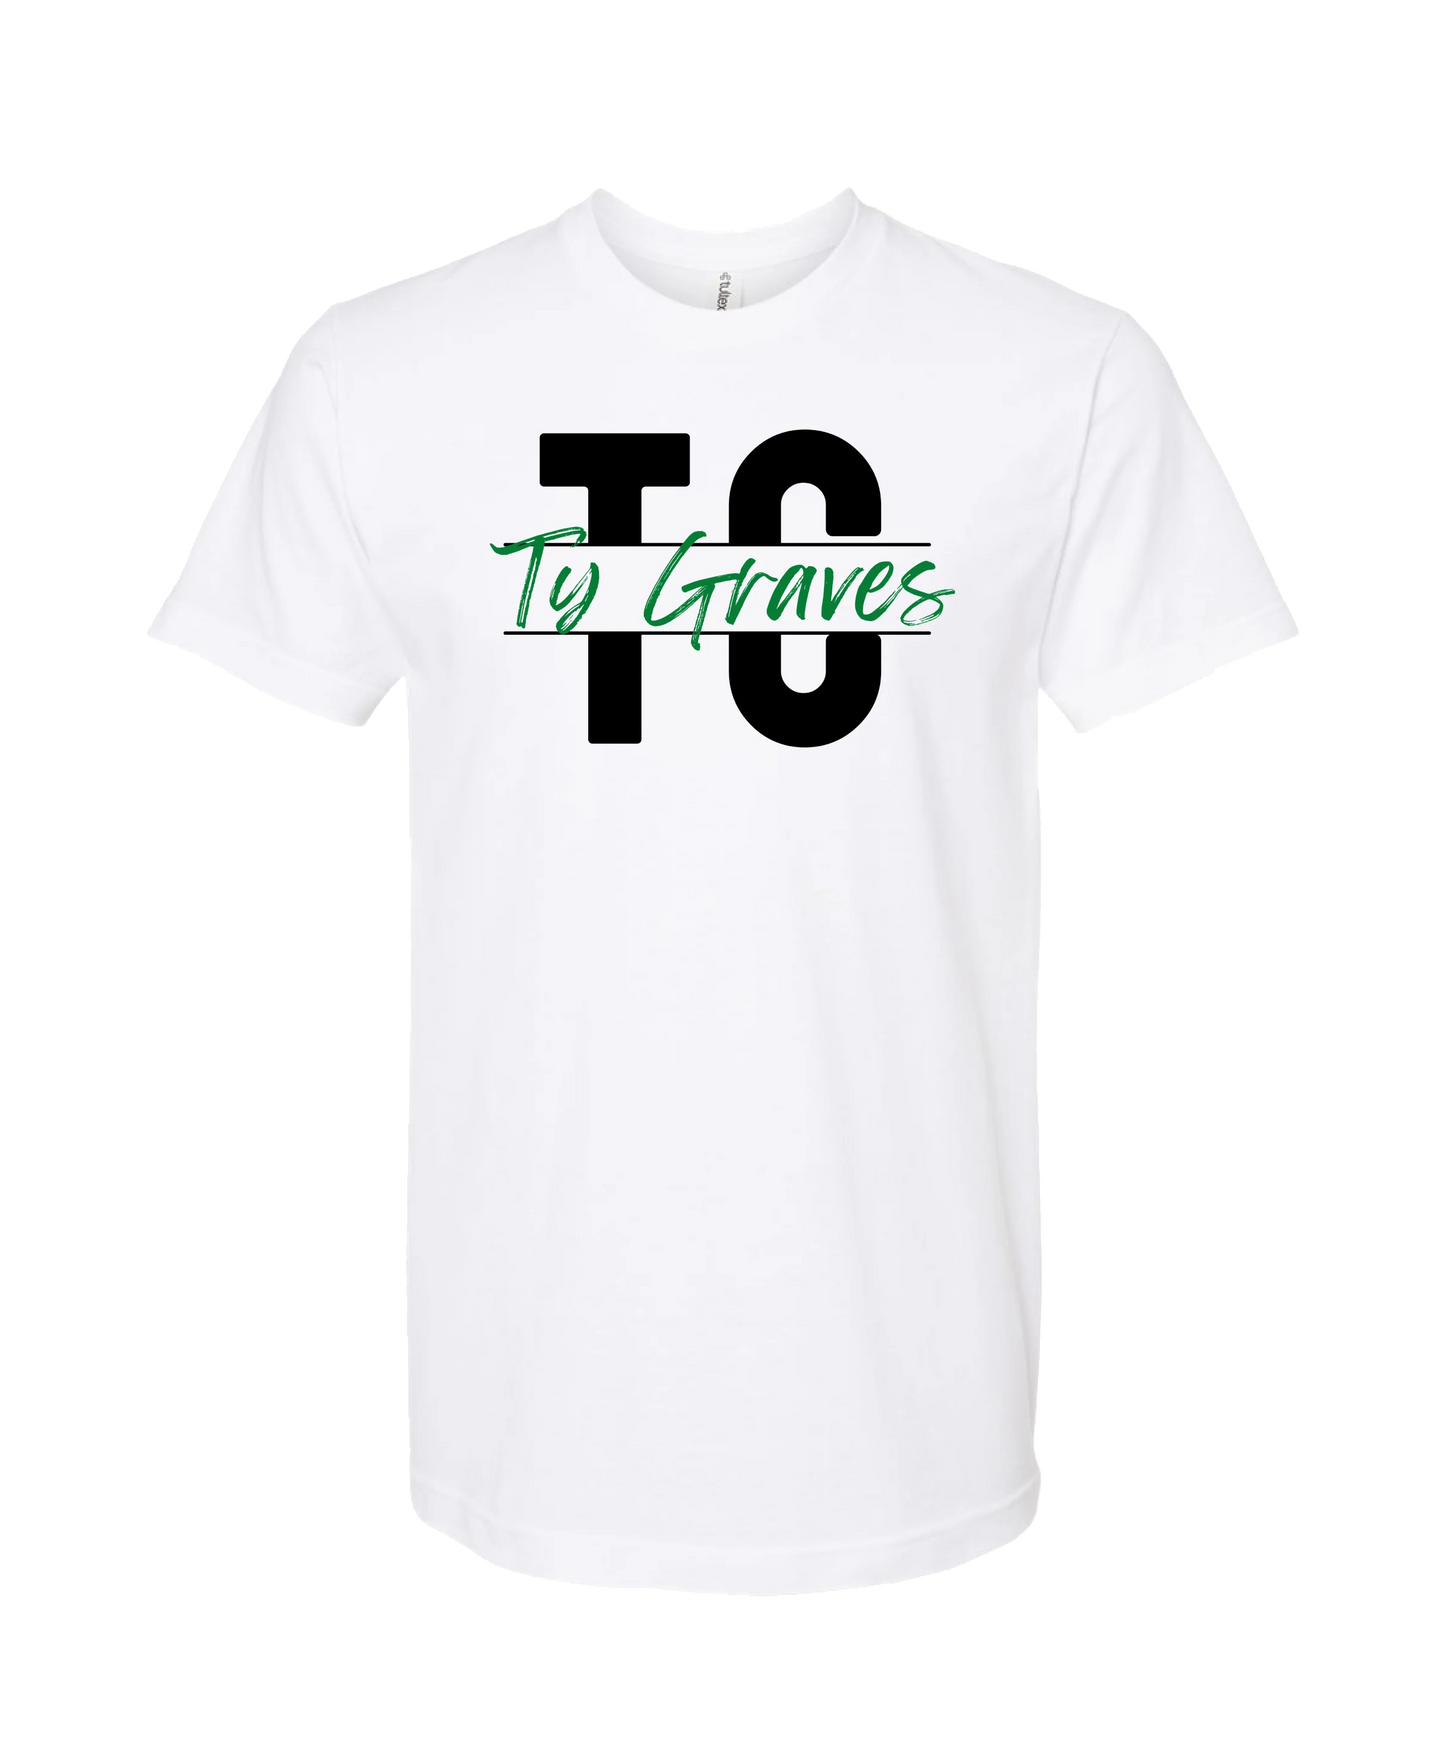 Ty Graves - Logo - White T-Shirt